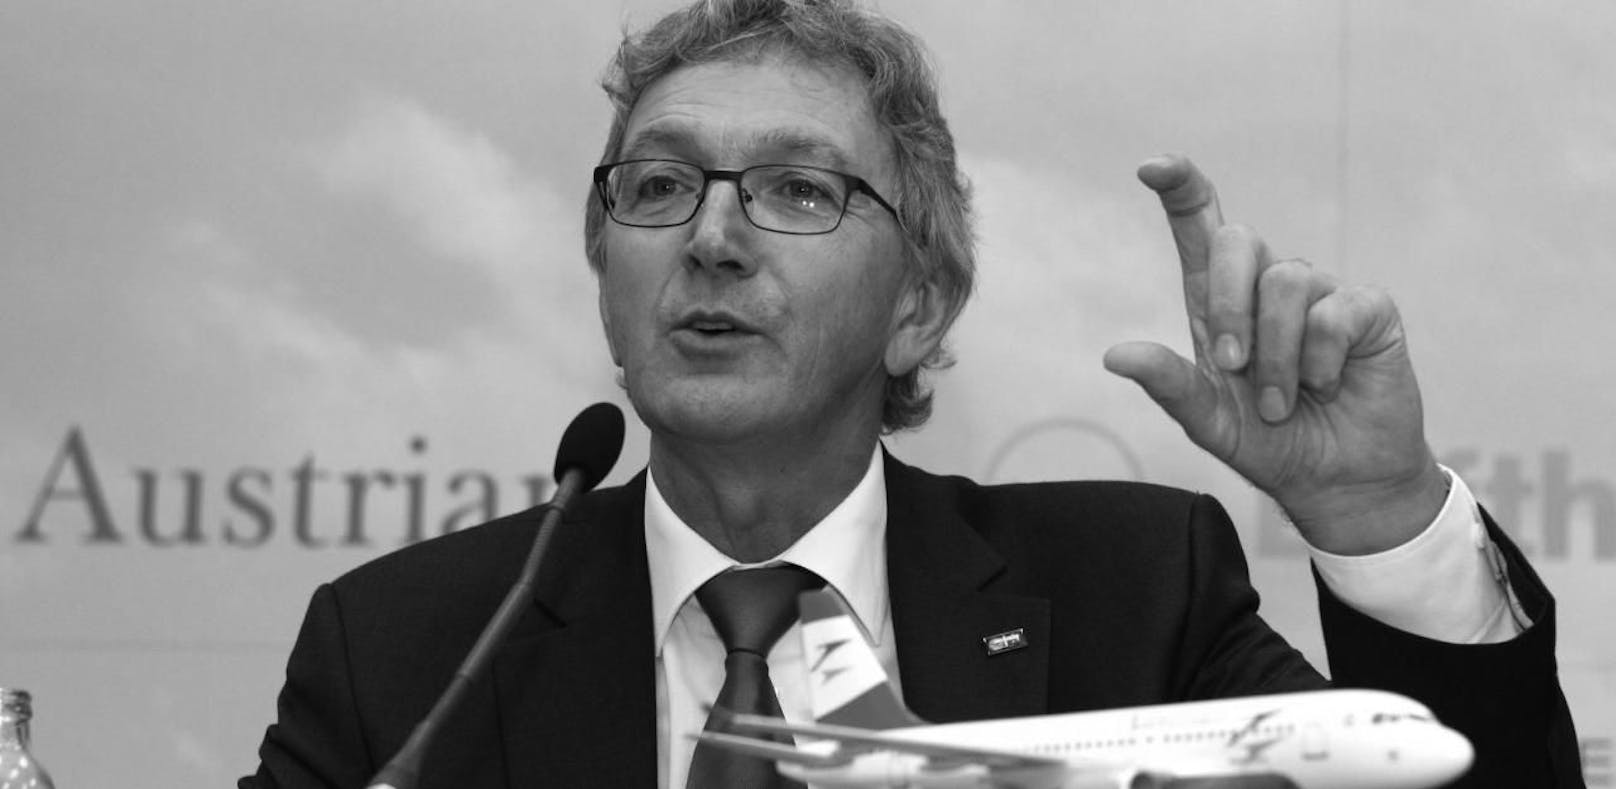 Trauer um Ex-Lufthansa-Boss Mayrhuber